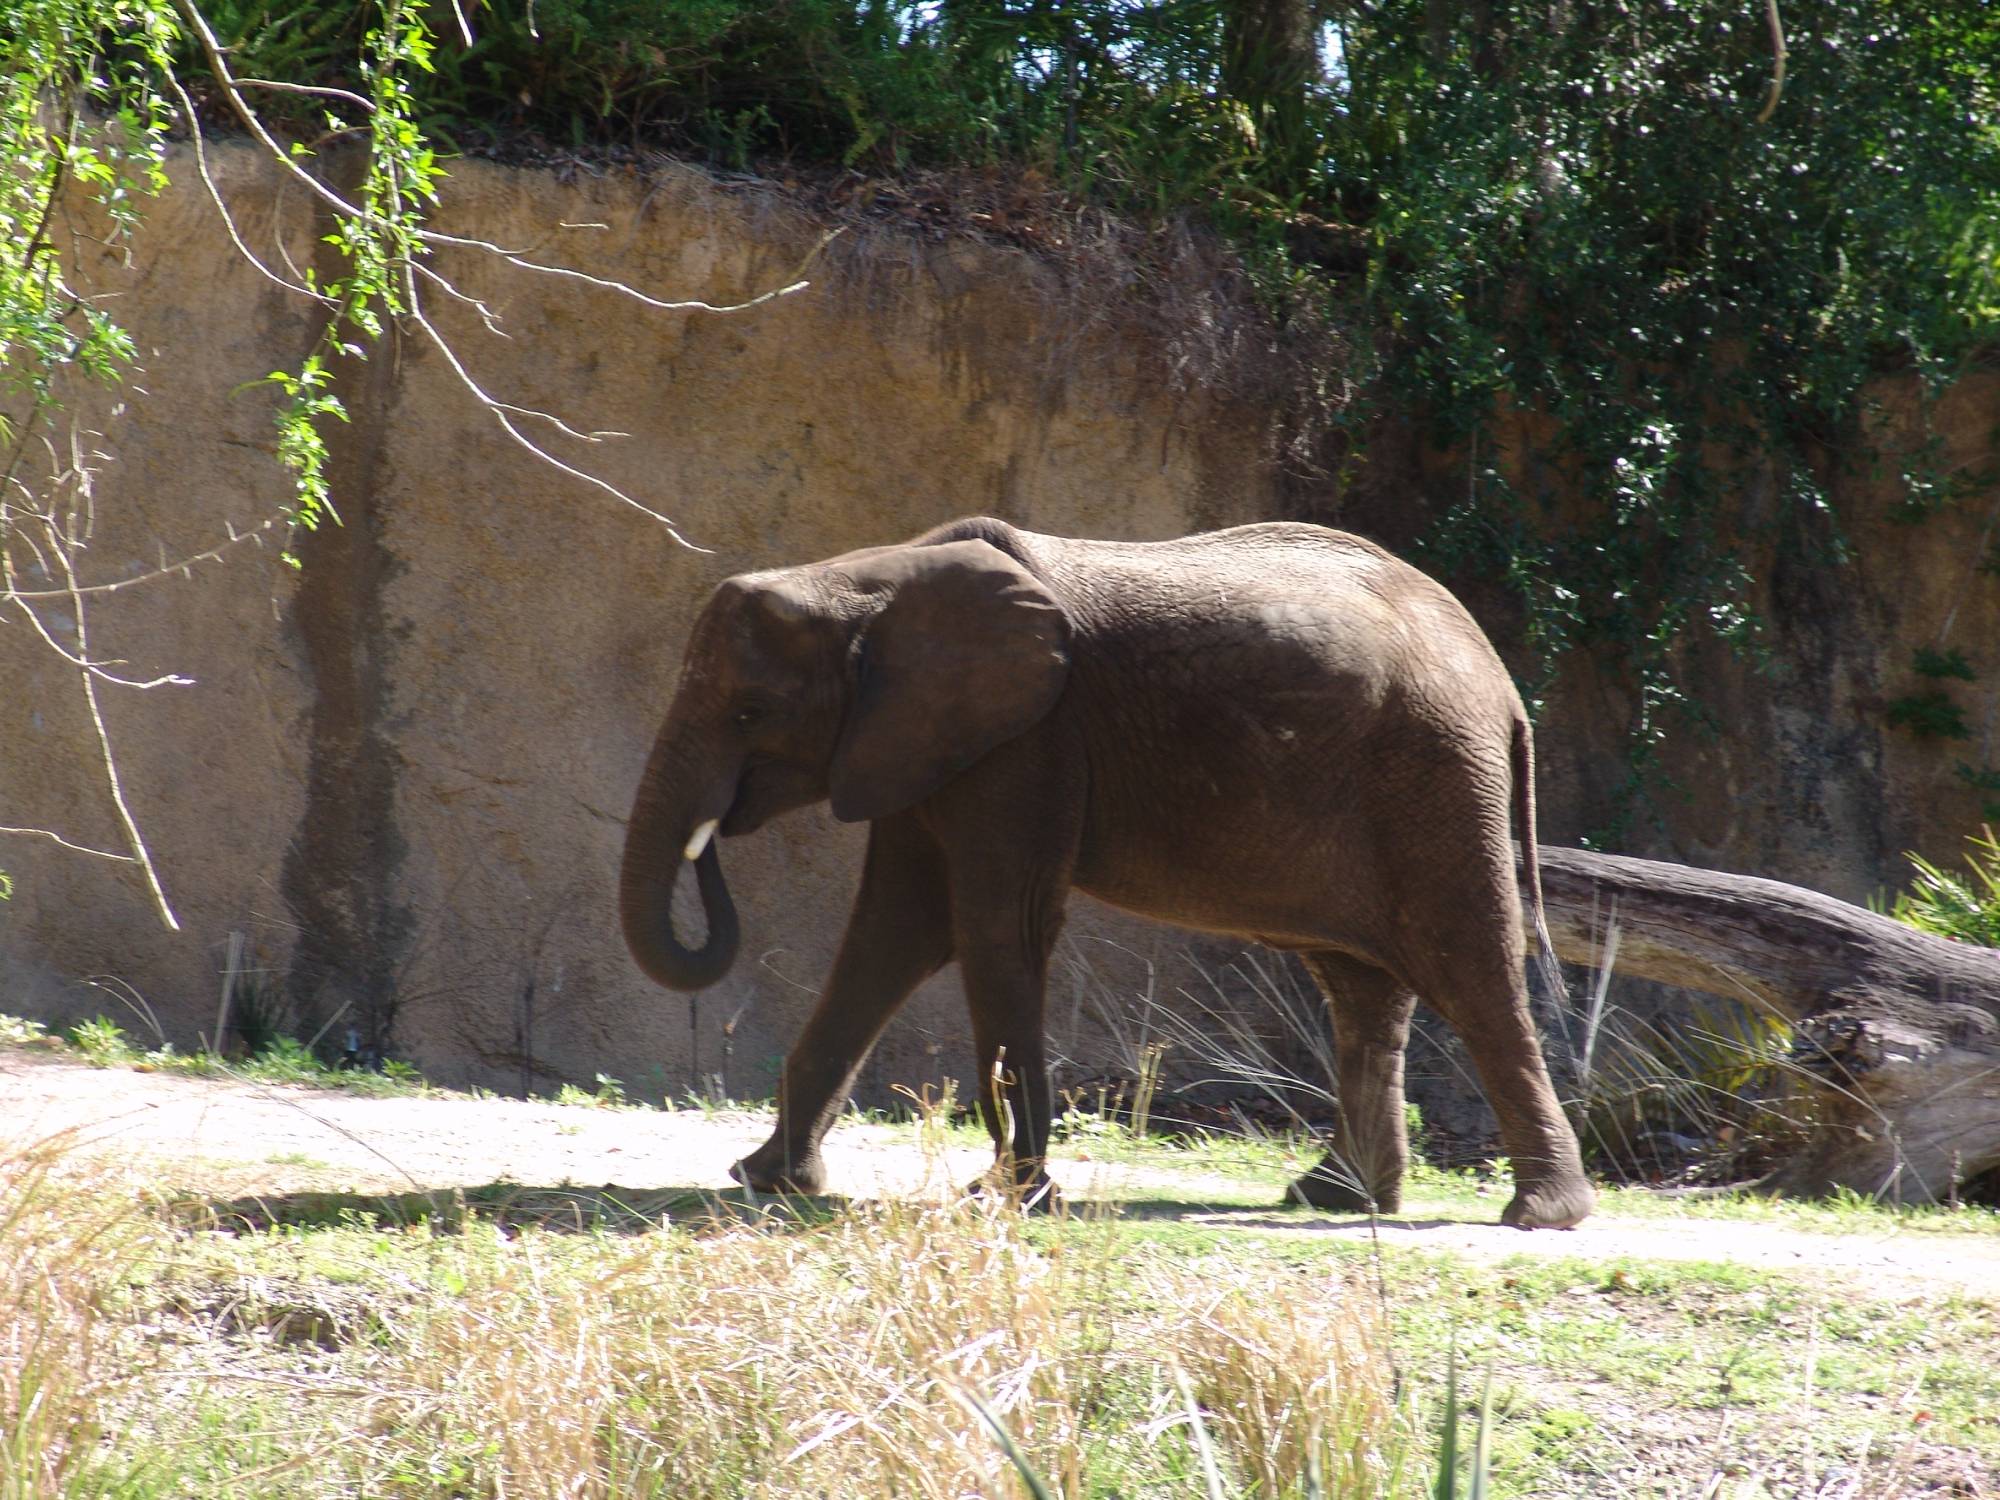 Animal Kingdom - elephants on safari